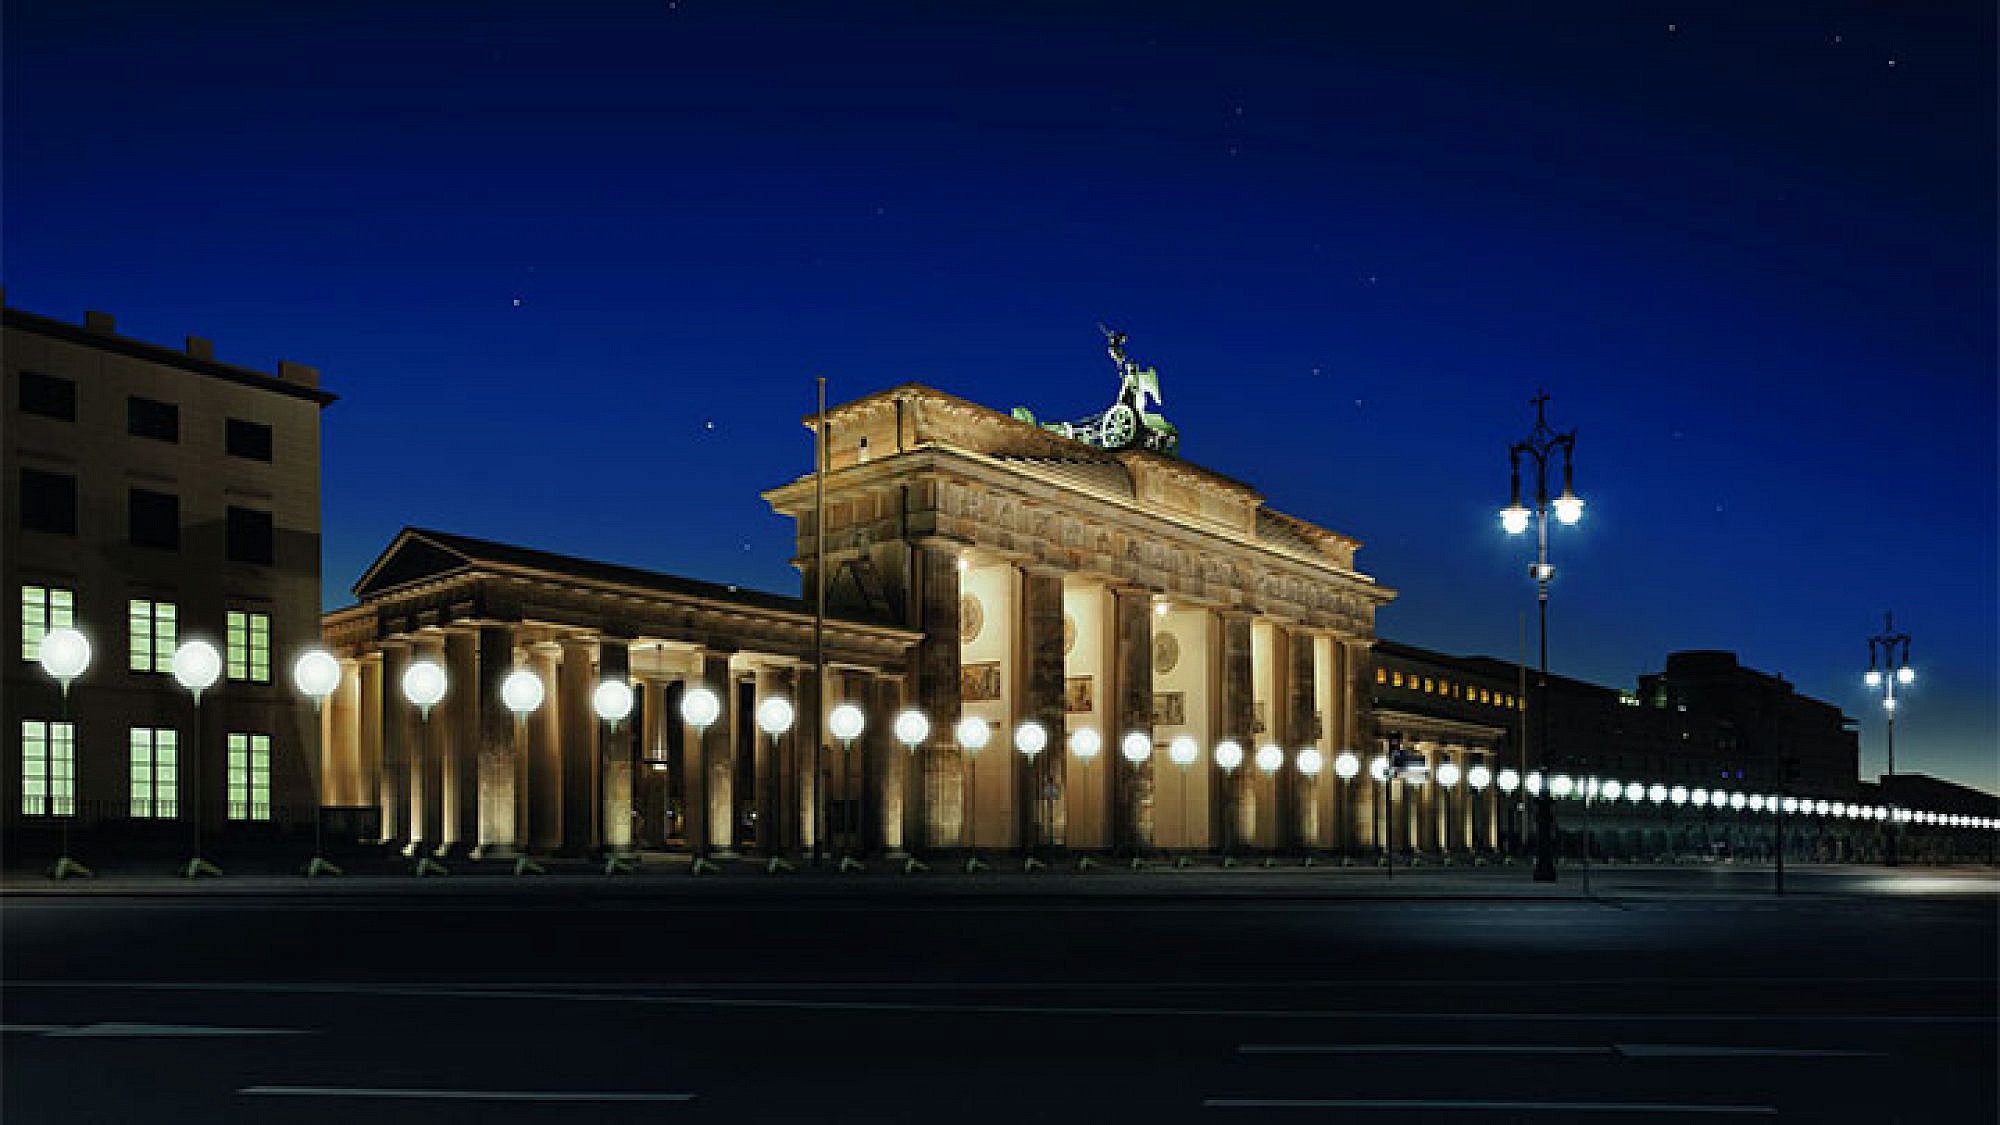 8,000 בלונים לבנים, שנראו כעמודי תאורה, פוזרו לאורך הנתיב של חומת ברלין. צילום: Daniel Bueche